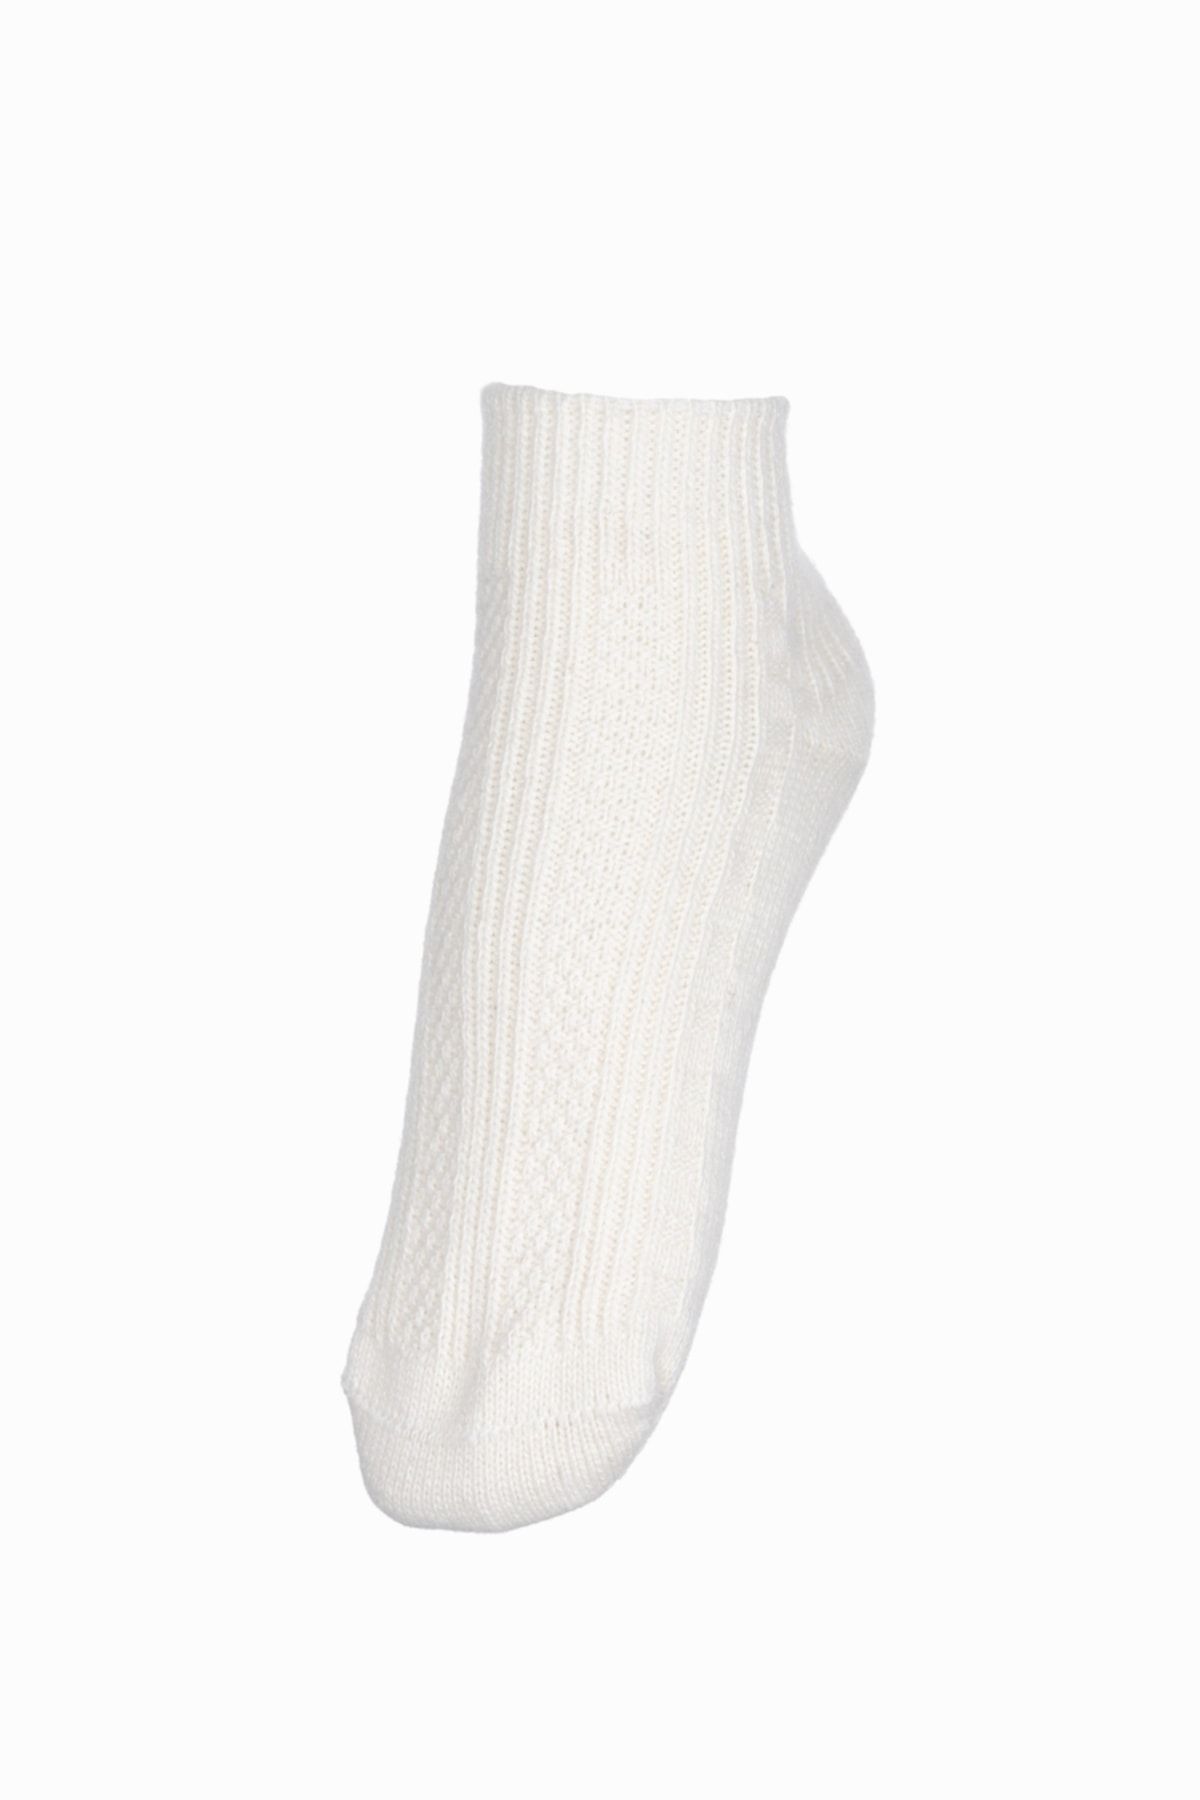 Fonem Kadın Patik Yünlü Çorap Fo 8013-1 Ekru